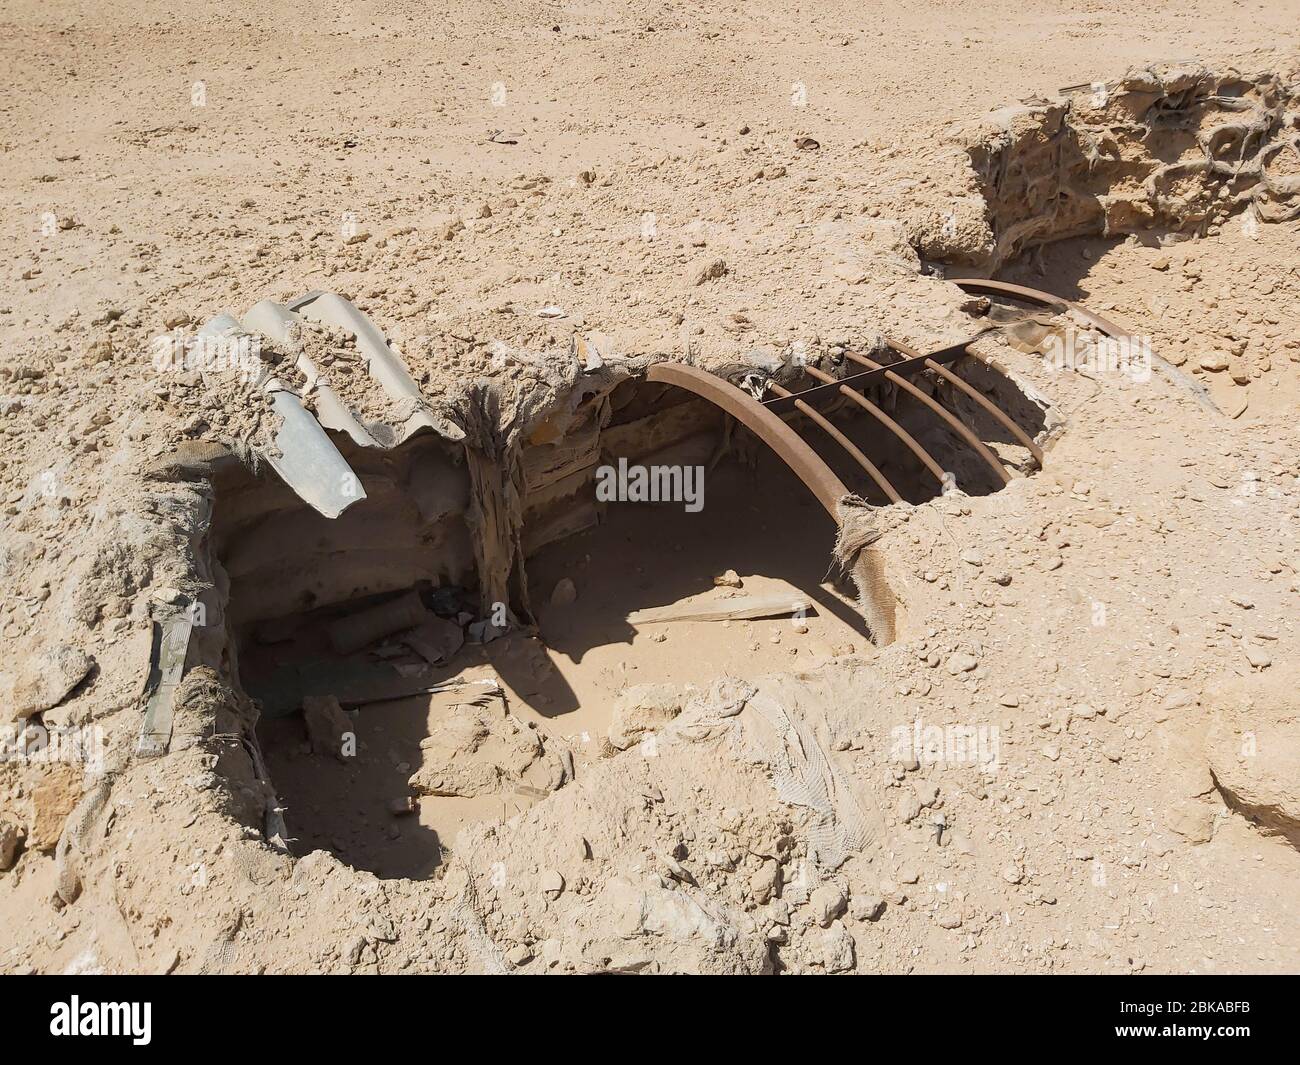 Vestiges d'une ancienne armée militaire abandonnée, creusée dans le désert d'afrique avec des sacs de sable Banque D'Images